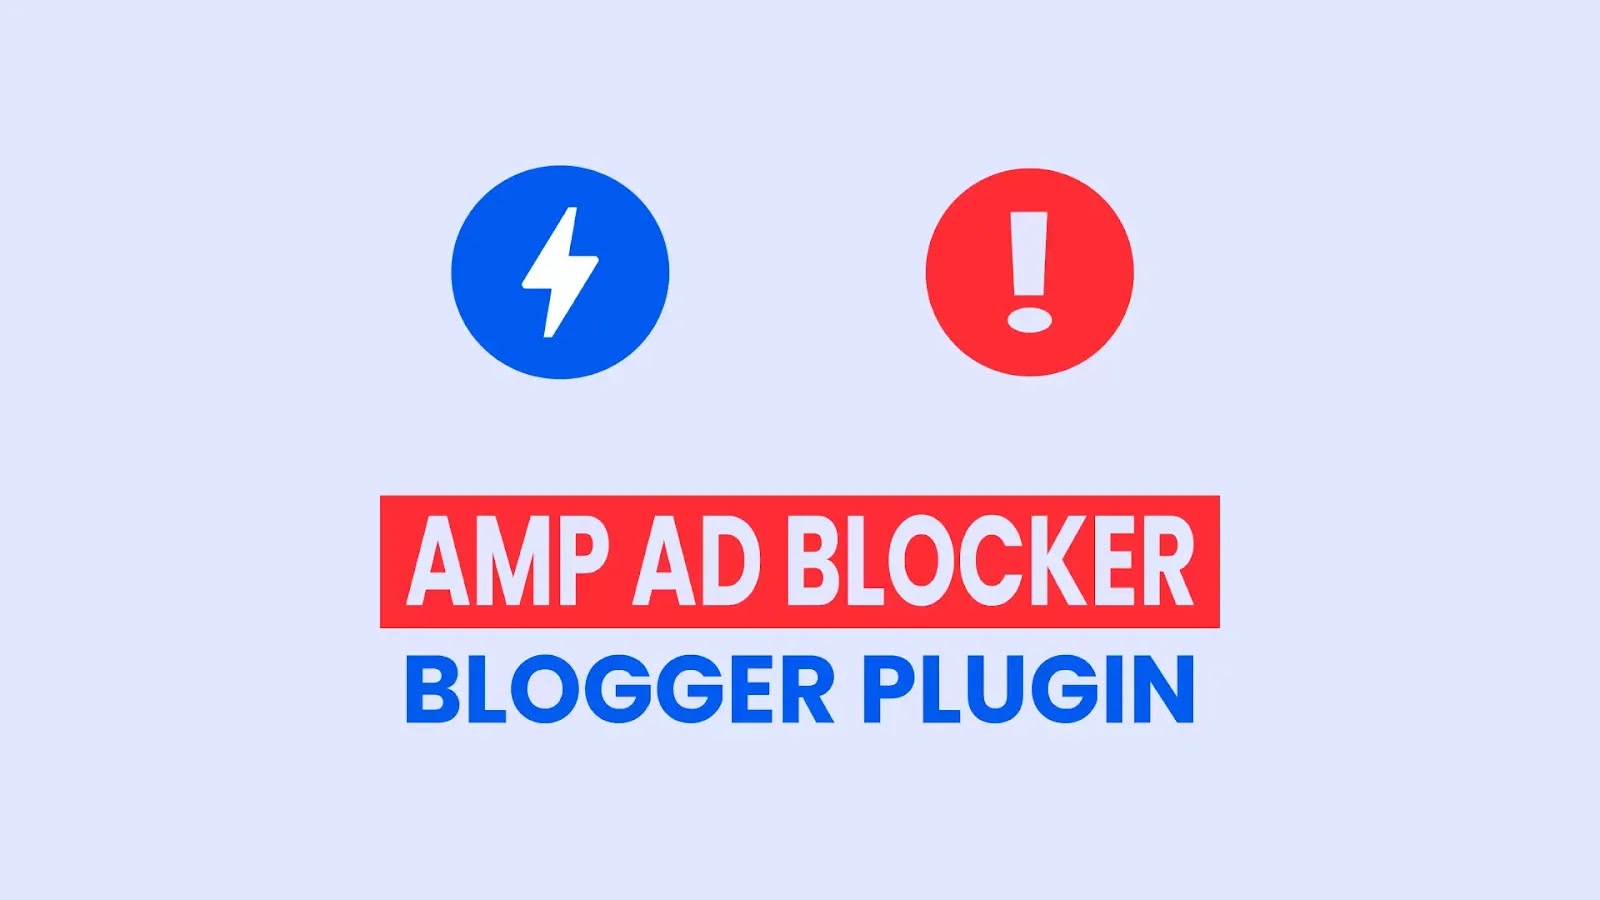 AMP Ad Blocker Blogger Plugin | Ads Blocker Alert Notification